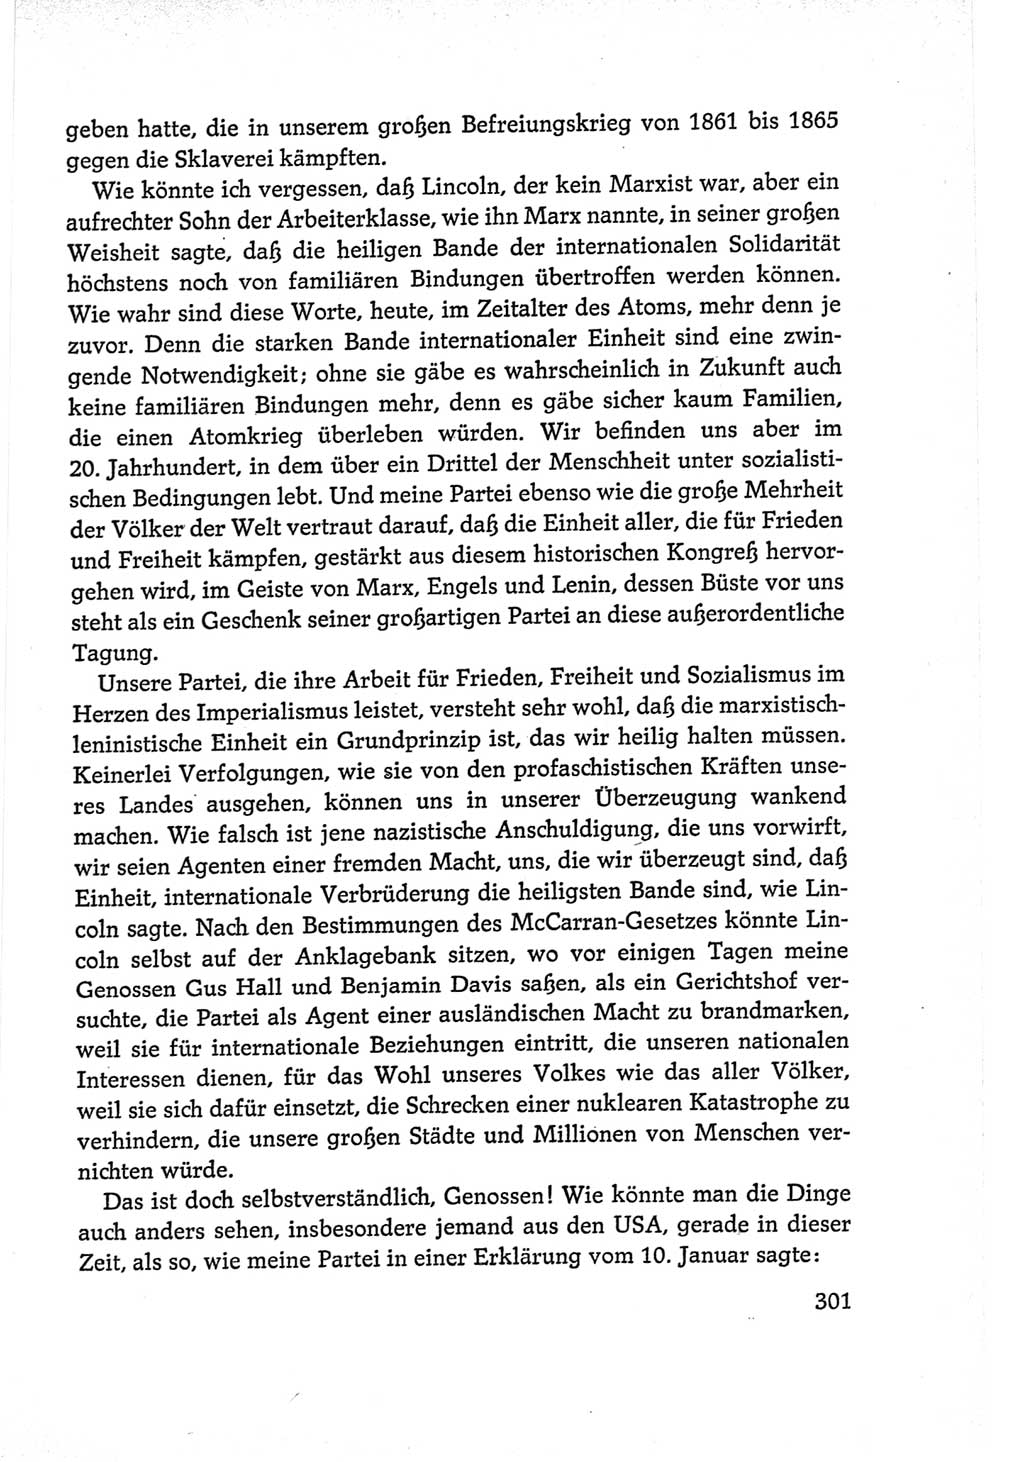 Protokoll der Verhandlungen des Ⅵ. Parteitages der Sozialistischen Einheitspartei Deutschlands (SED) [Deutsche Demokratische Republik (DDR)] 1963, Band Ⅱ, Seite 301 (Prot. Verh. Ⅵ. PT SED DDR 1963, Bd. Ⅱ, S. 301)